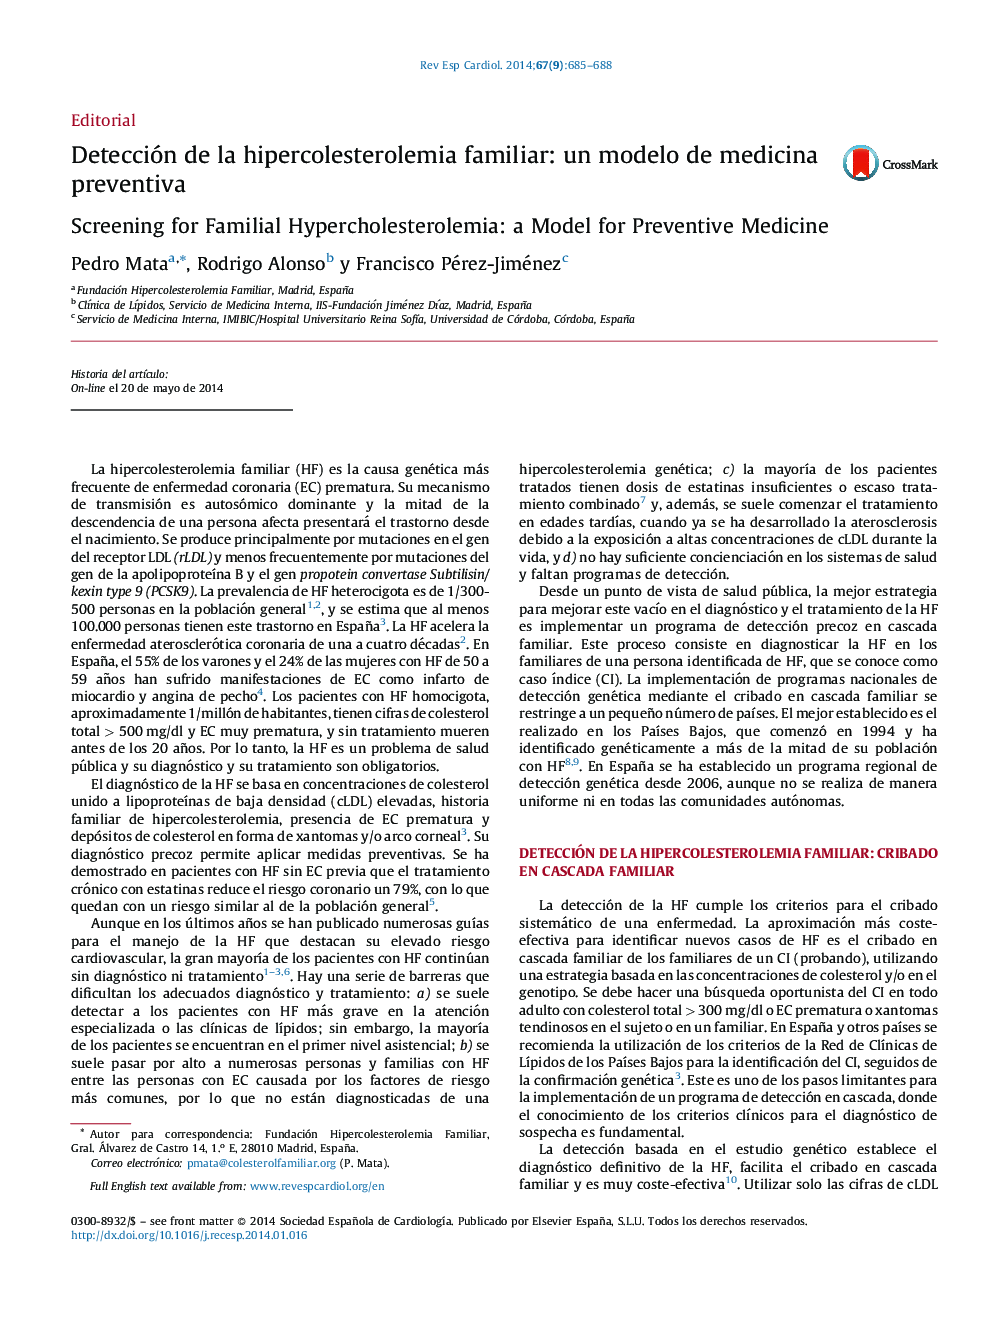 Detección de la hipercolesterolemia familiar: un modelo de medicina preventiva